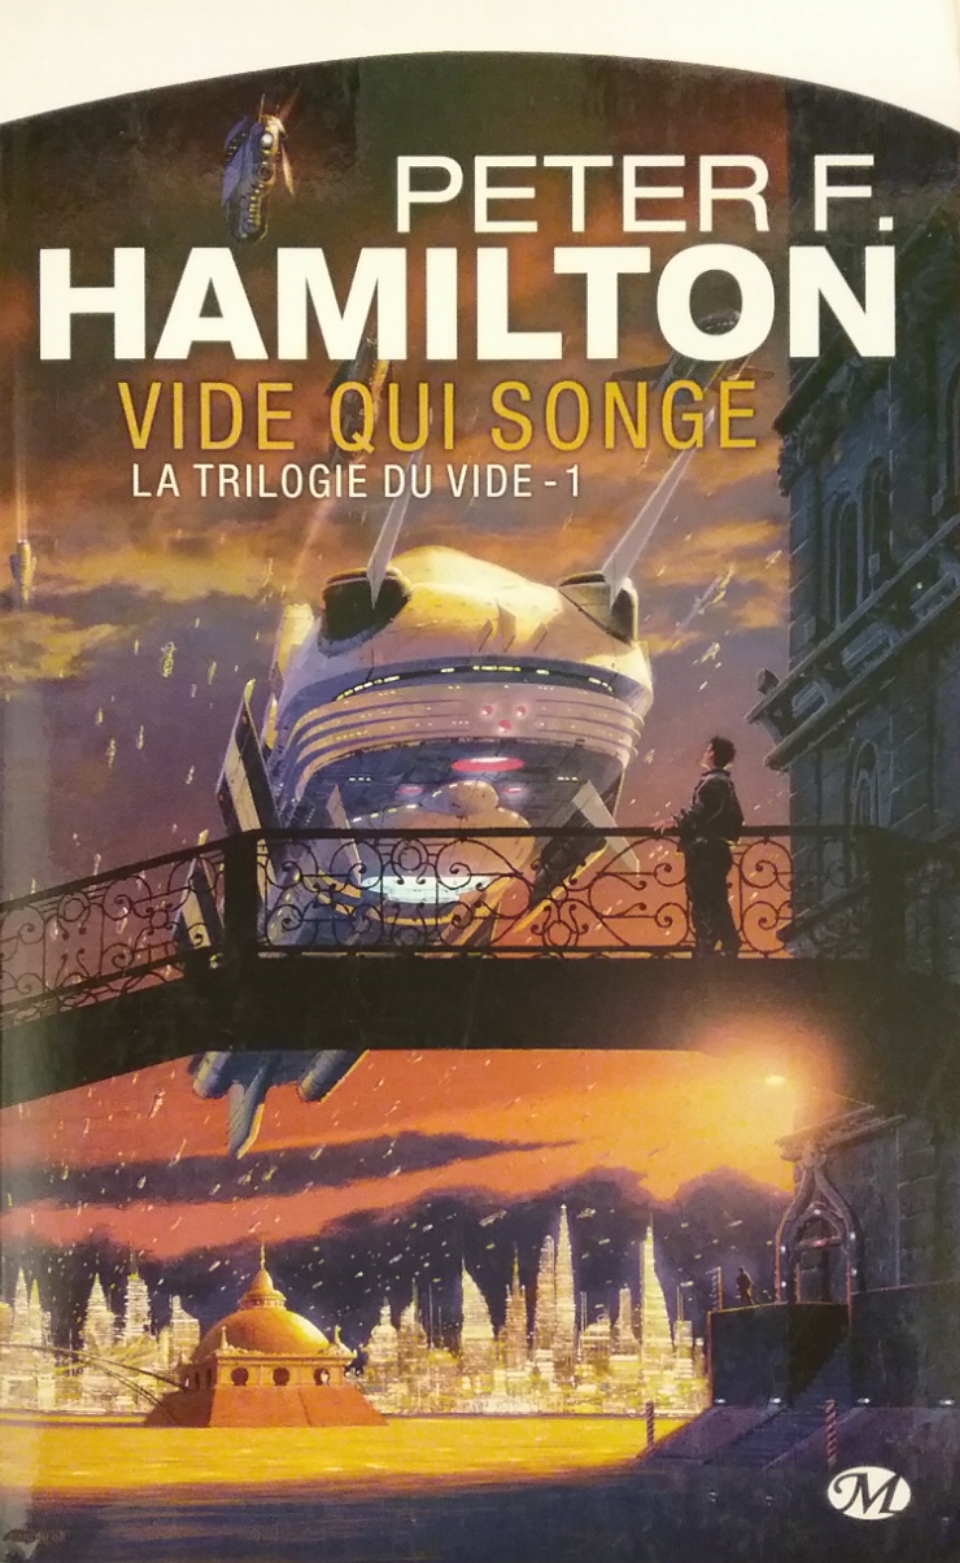 La trilogie du vide Tome 1 vide qui songe Peter F. Hamilton